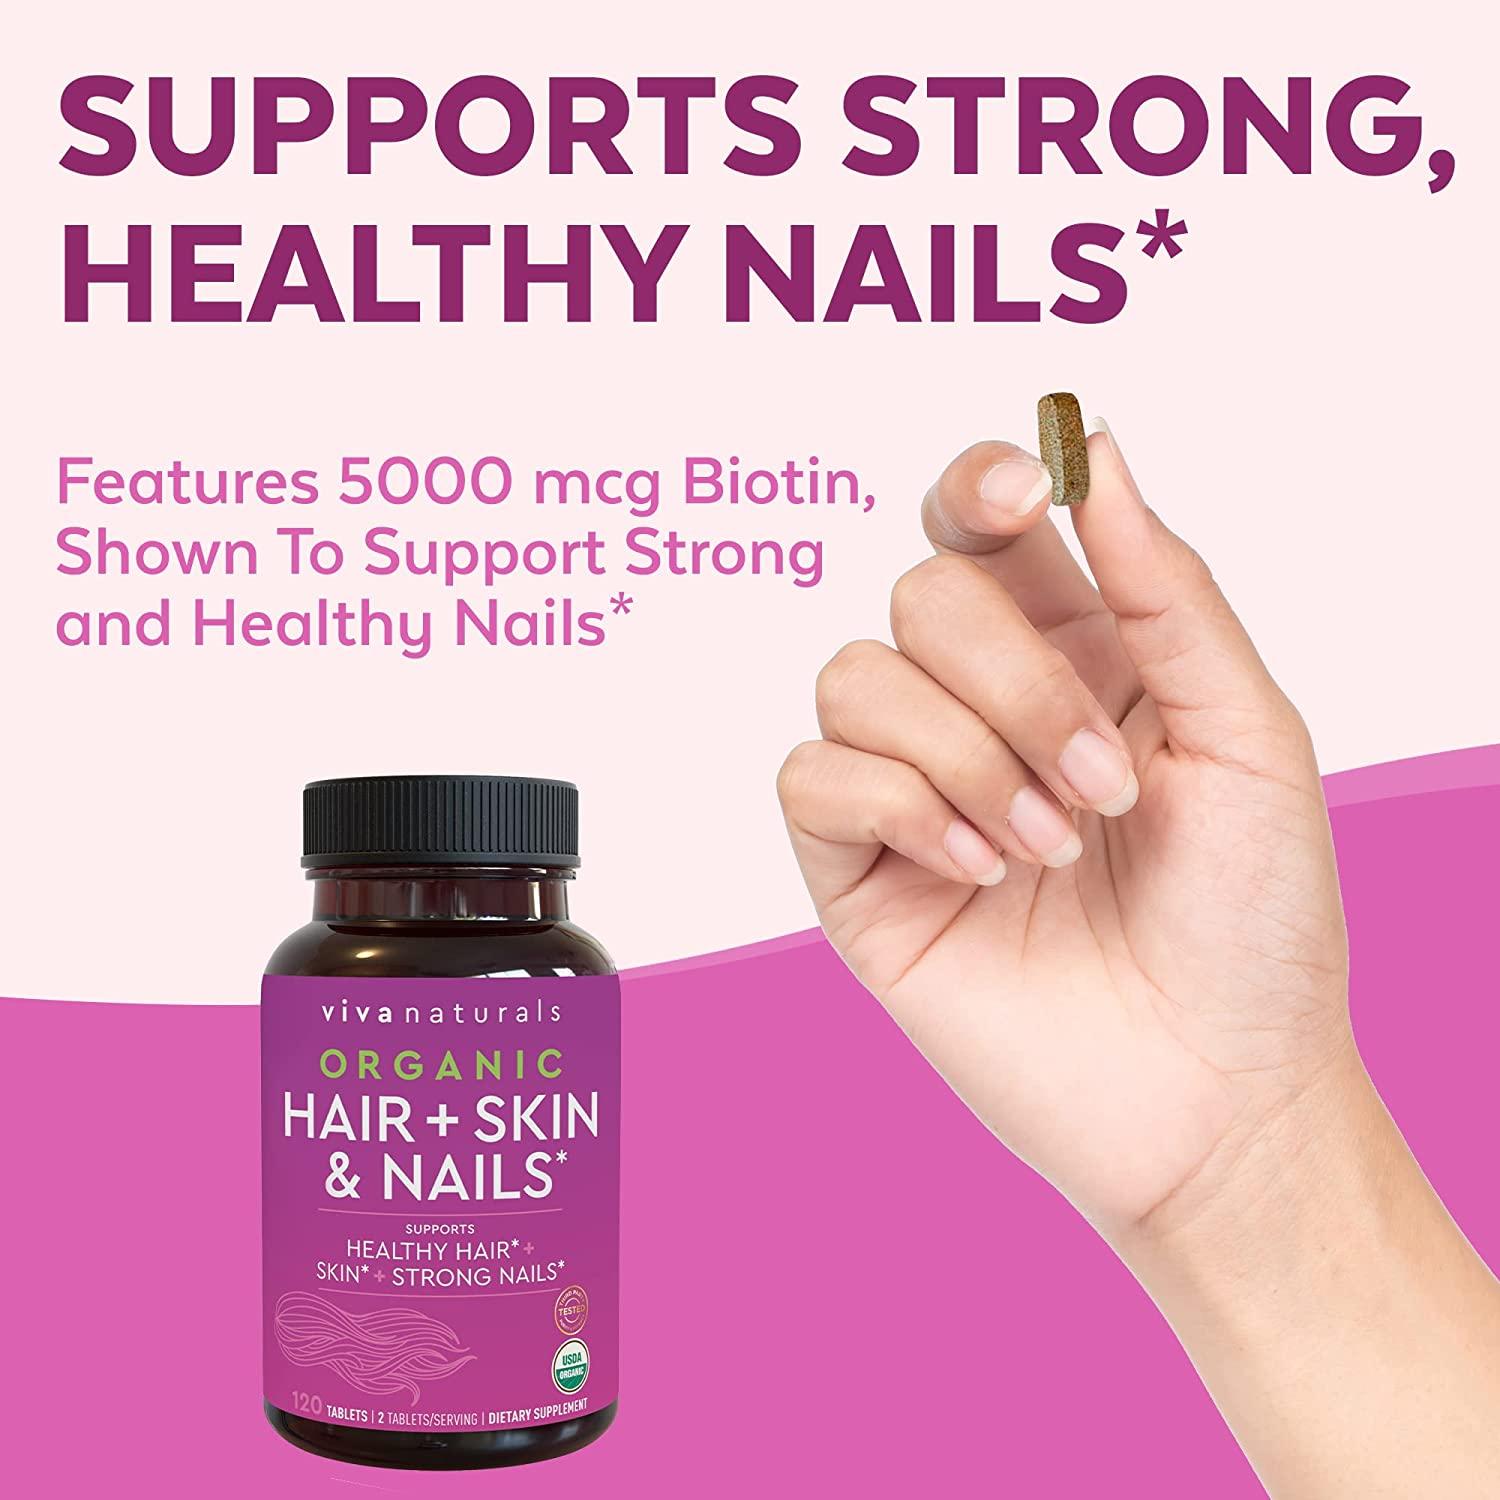 Organic Hair + Skin & Nails* – Viva Naturals